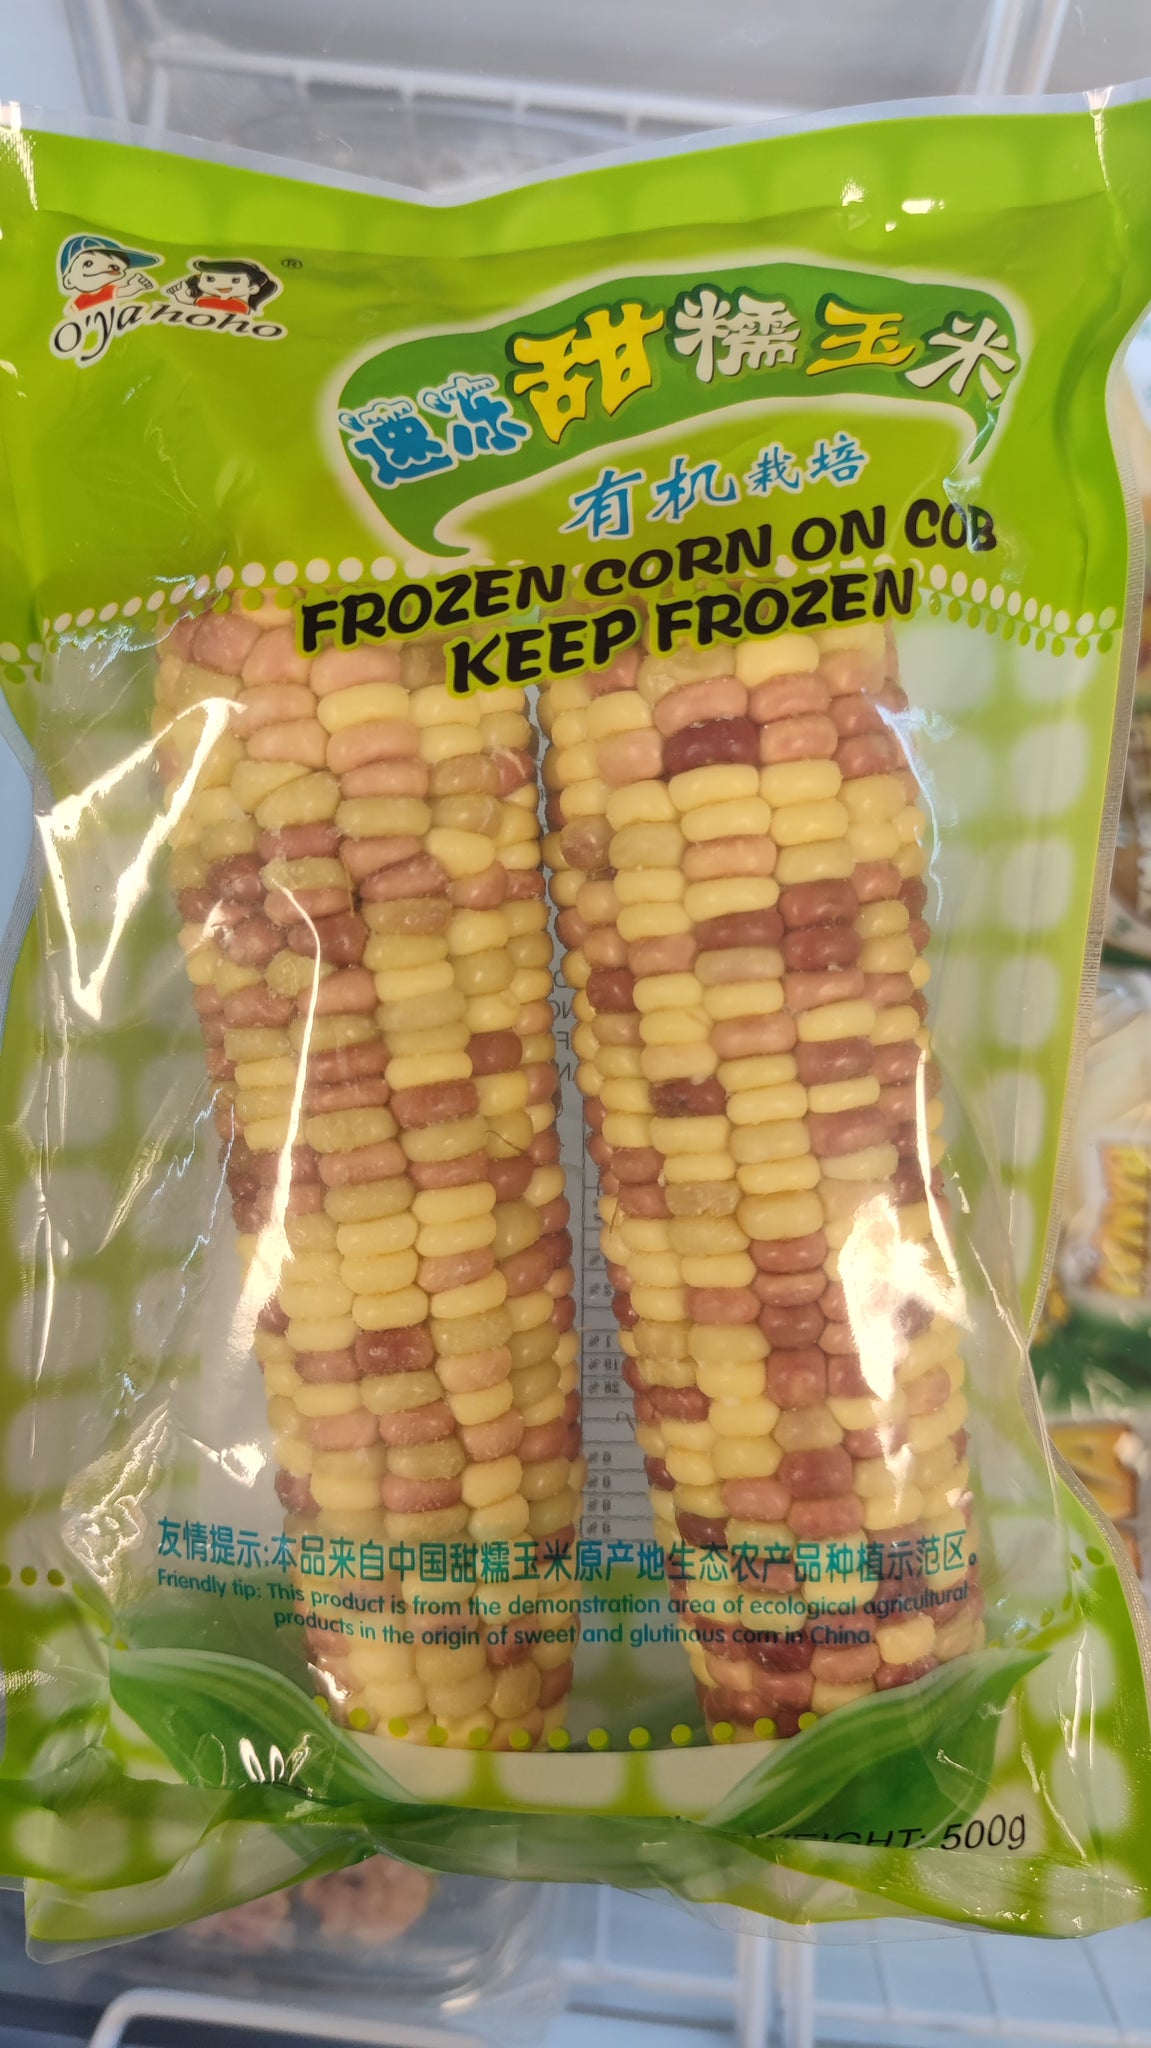 速冻甜糯玉米 Frozen corn on cob